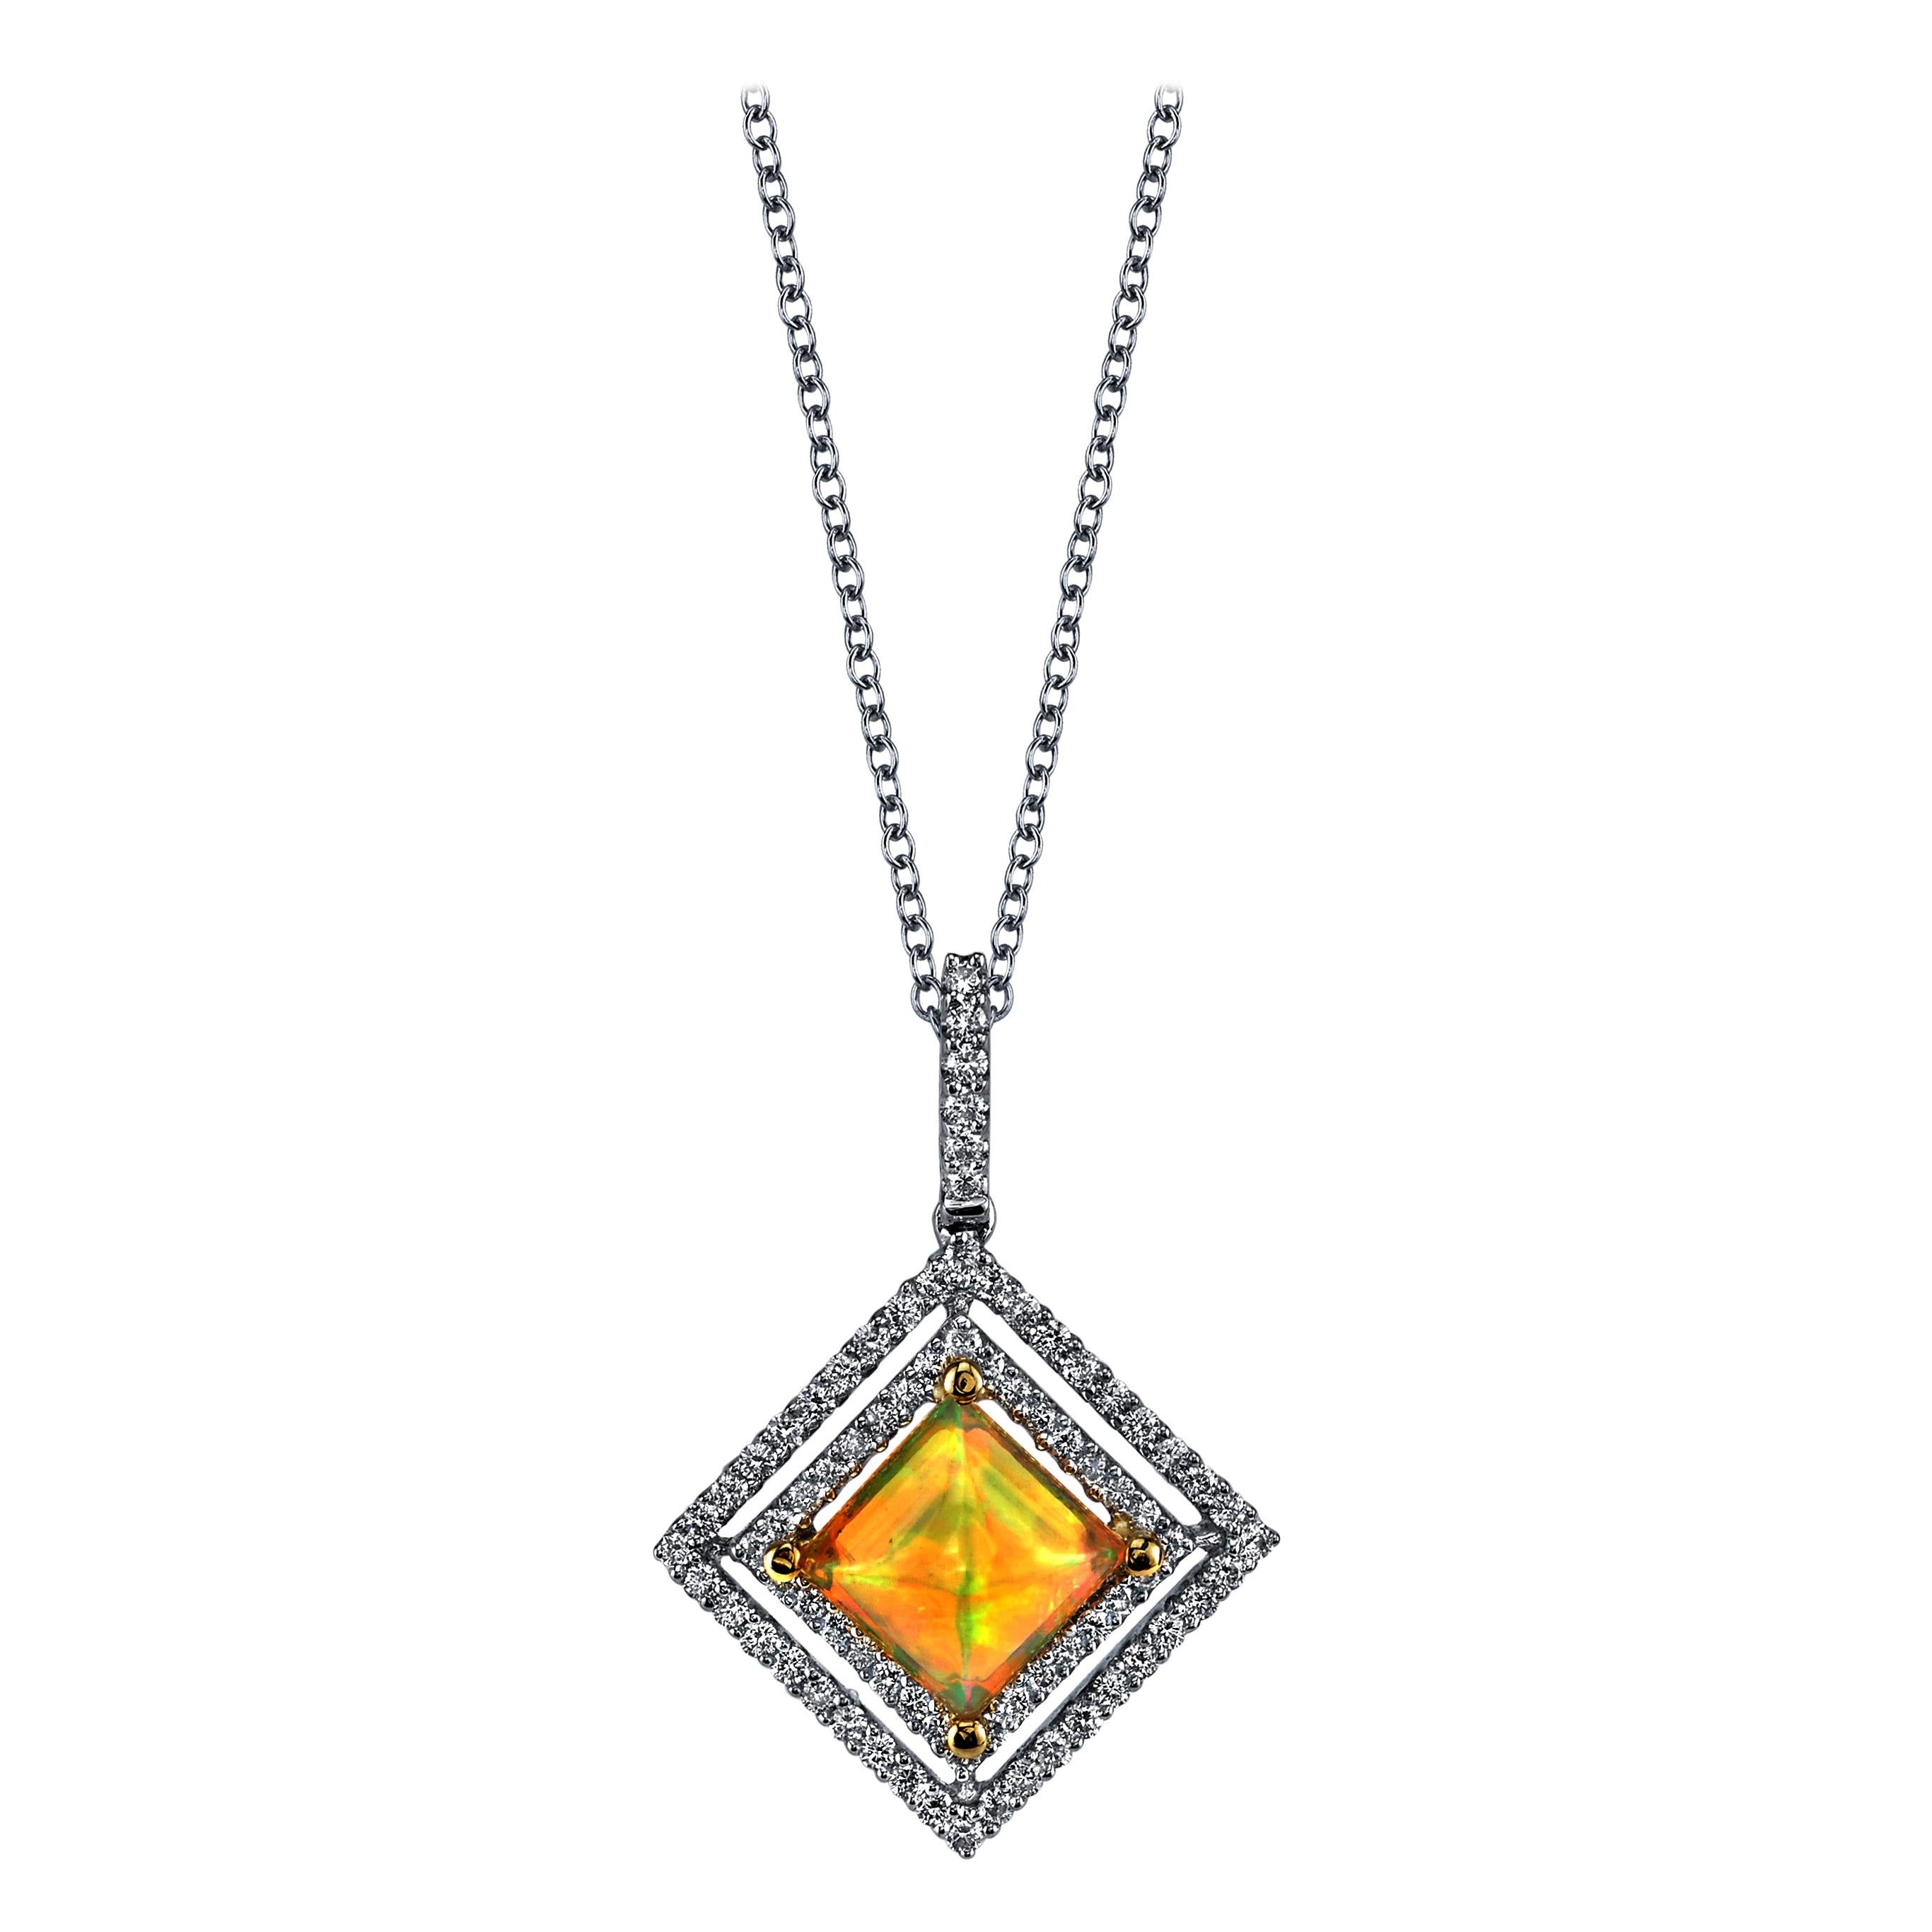 Halskette aus Weißgold mit goldenem Opal und schwebenden Diamanten mit doppeltem Halo